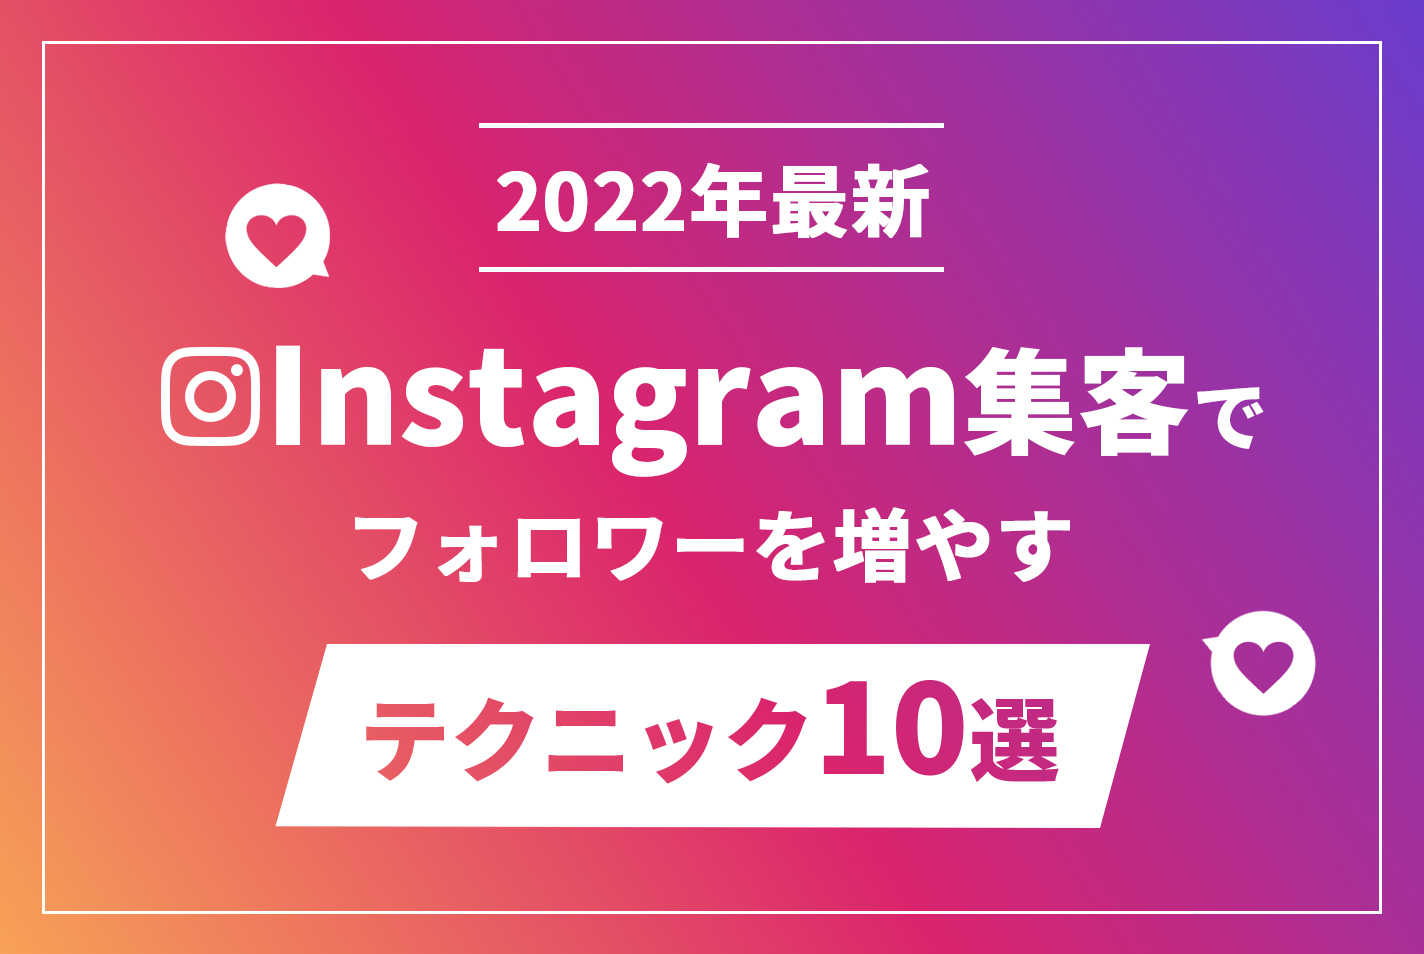 【2022年最新】Instagram集客でフォロワーを増やすテクニック10選